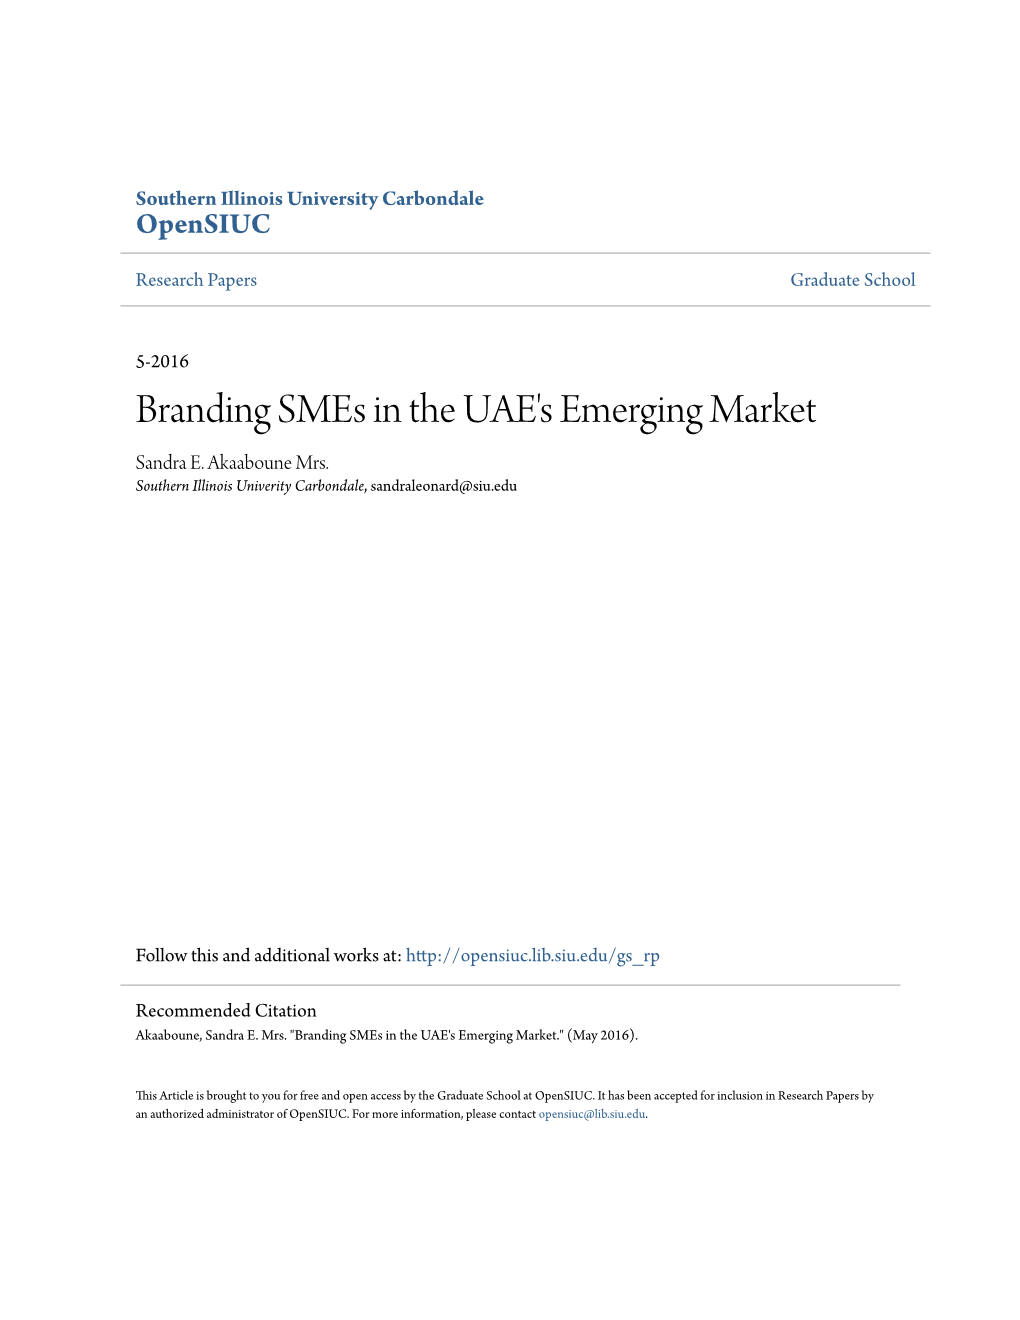 Branding Smes in the UAE's Emerging Market Sandra E